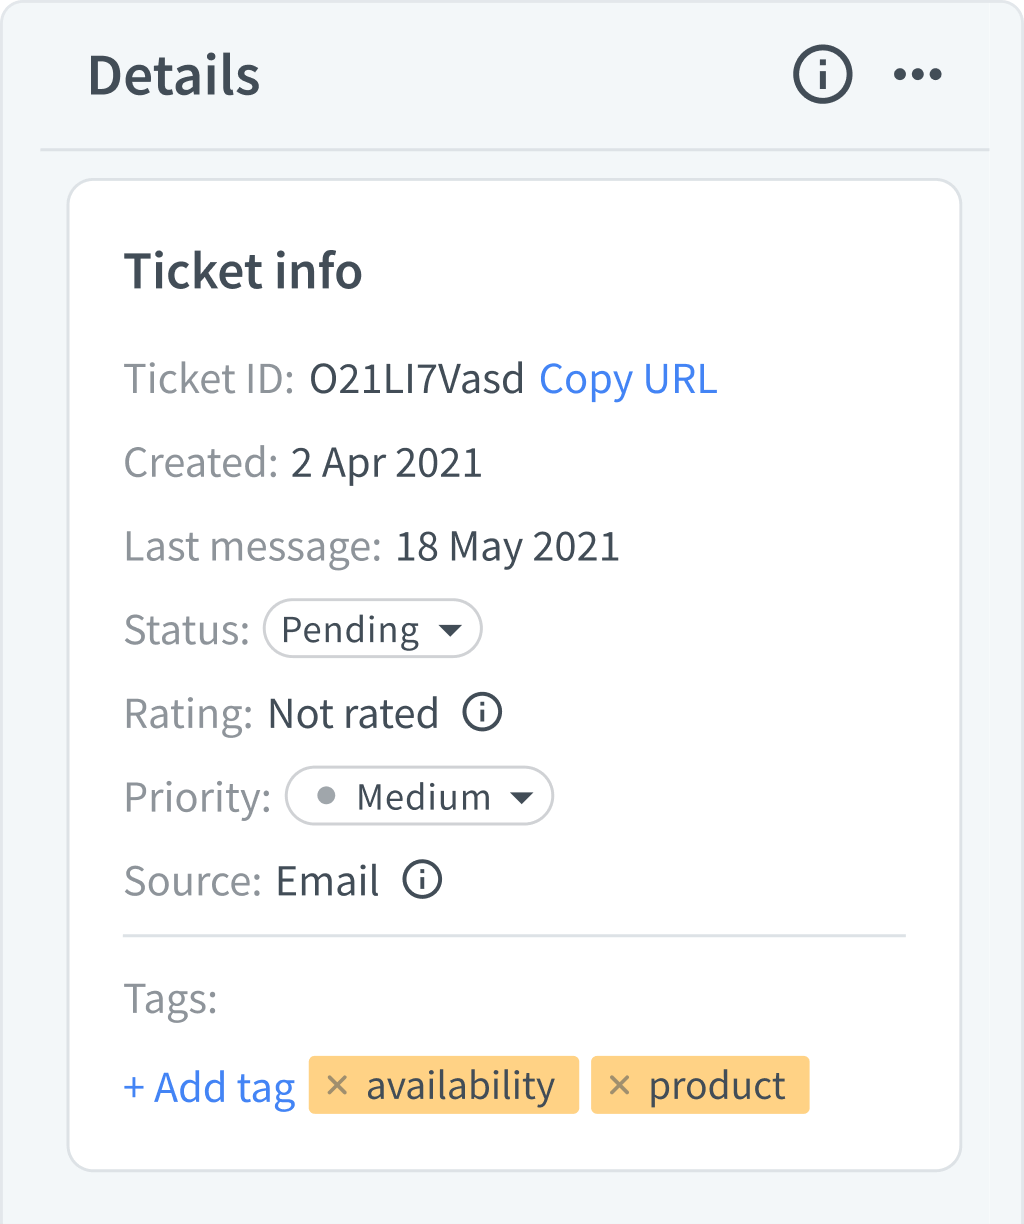 Ticket details in HelpDesk